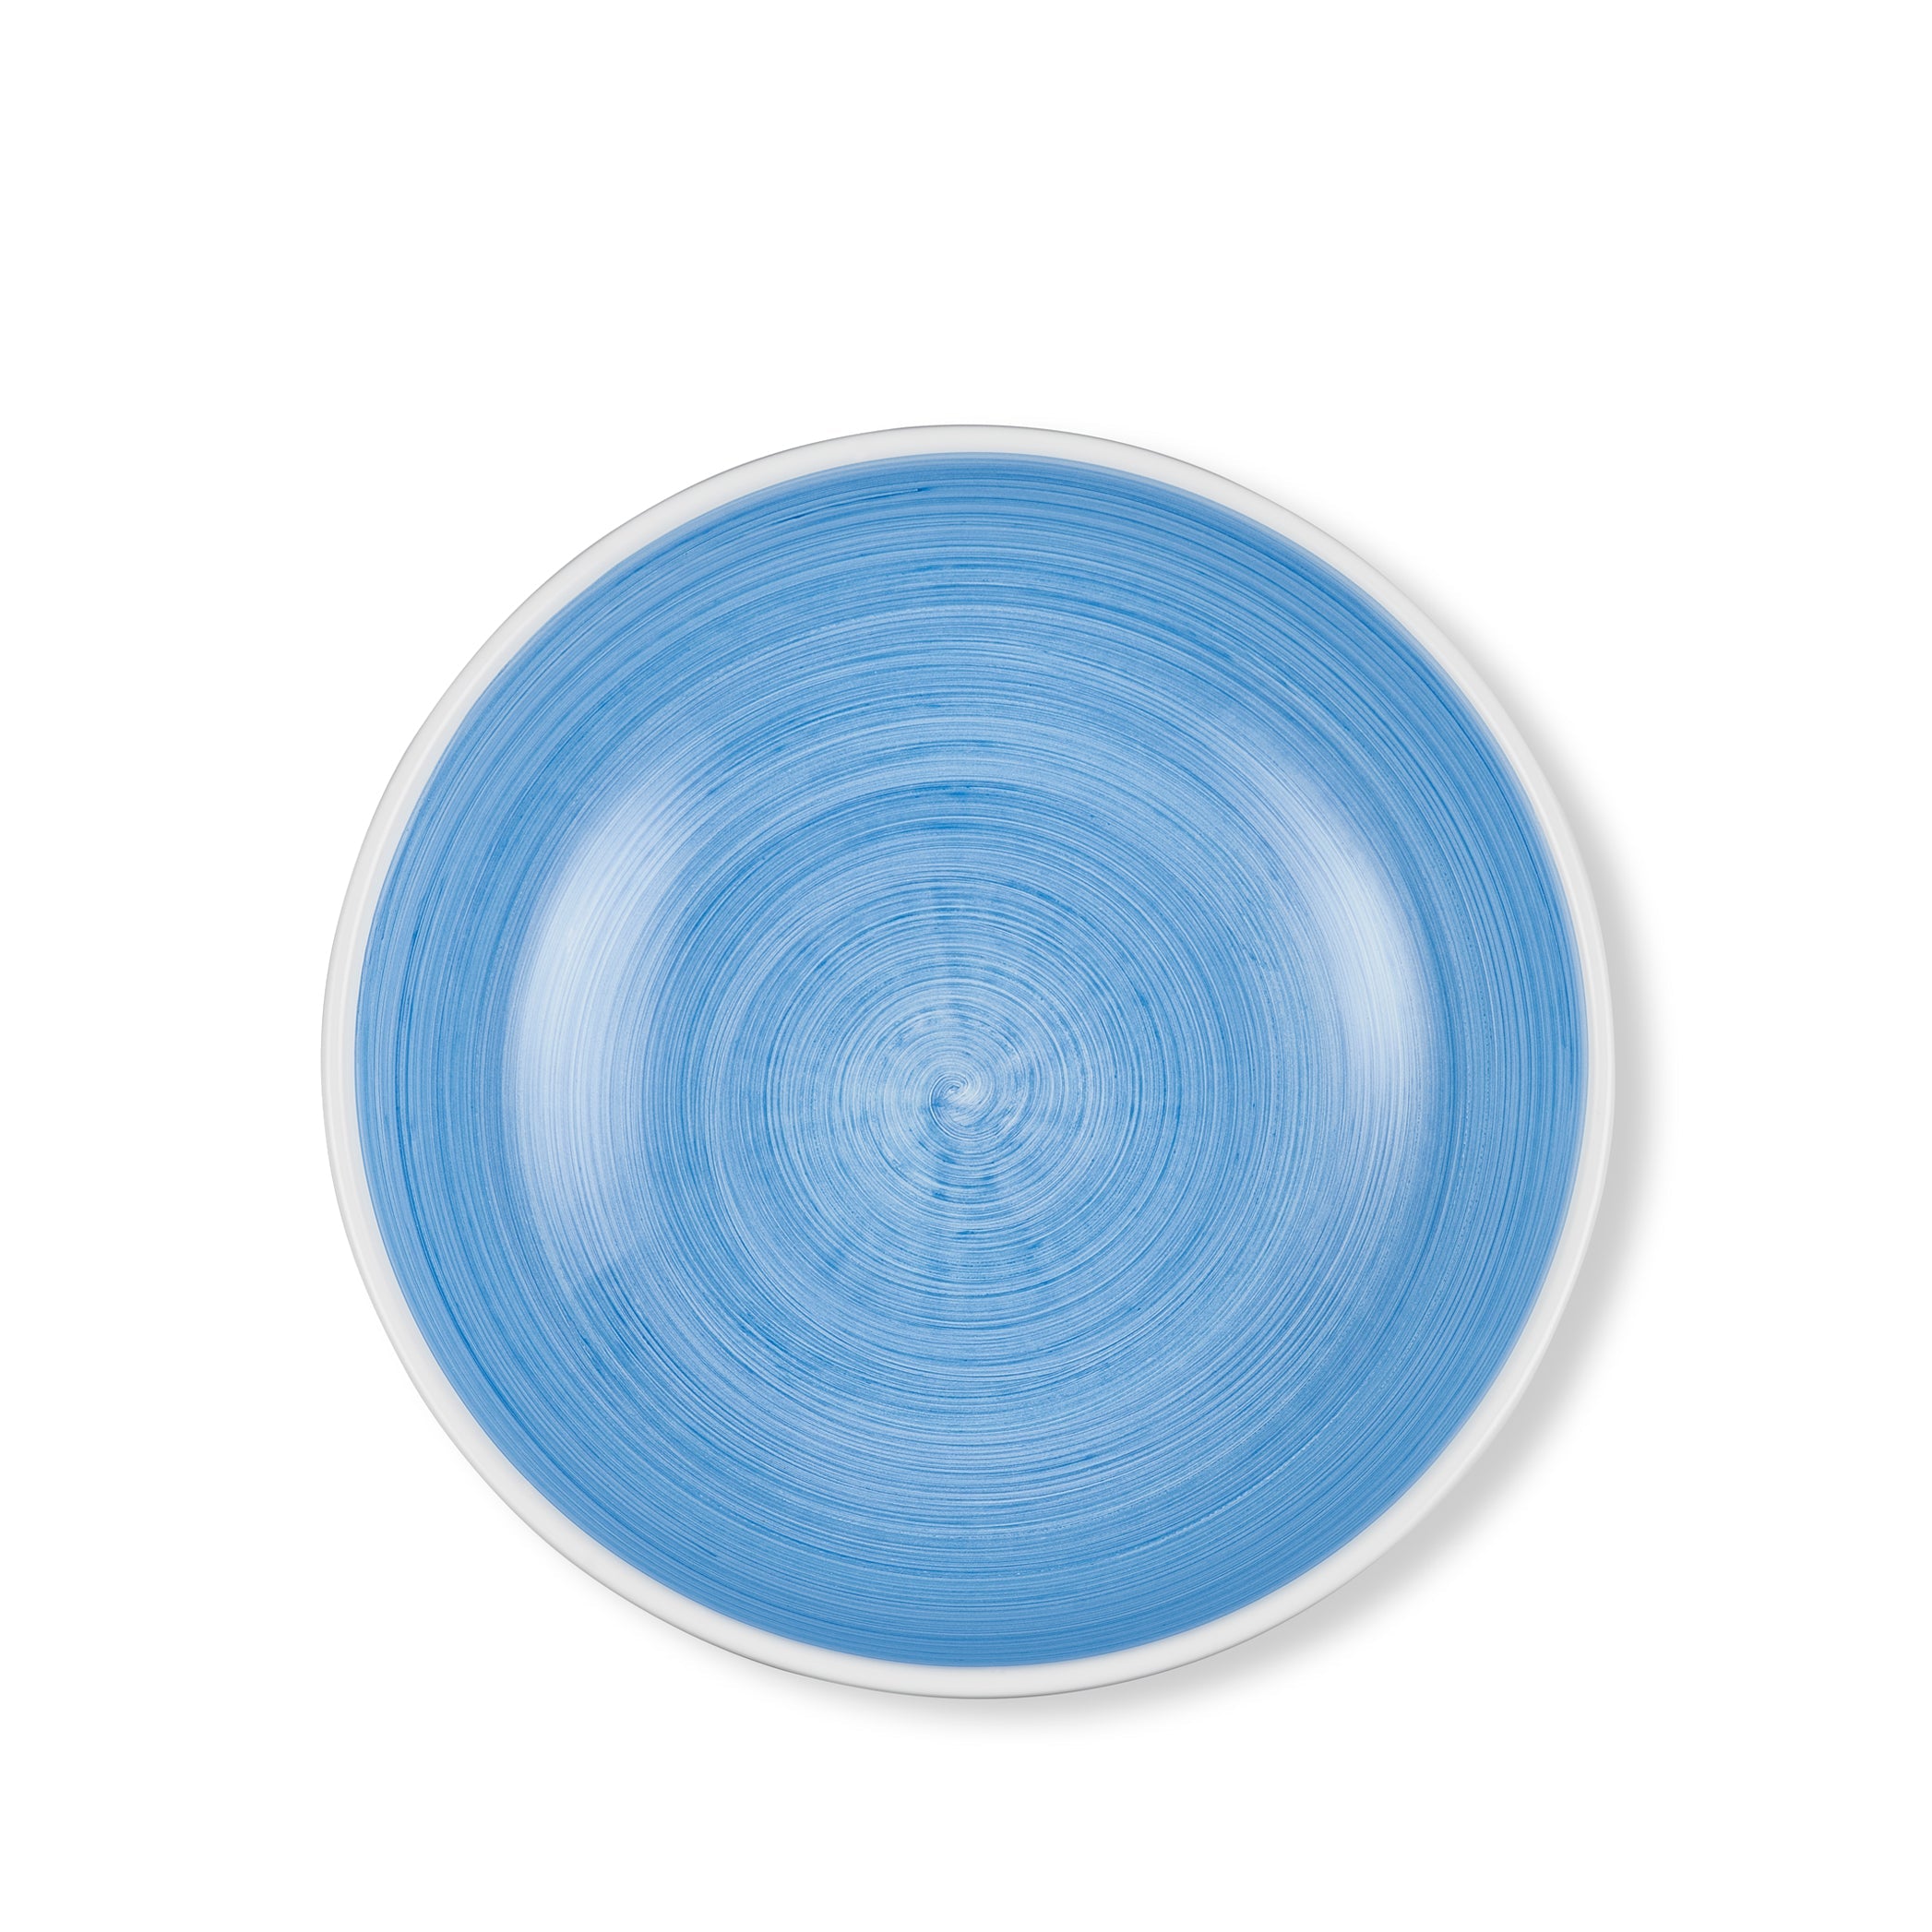 S&B 'Brushed' Ceramic Serving Bowl in Light Blue, 30cm